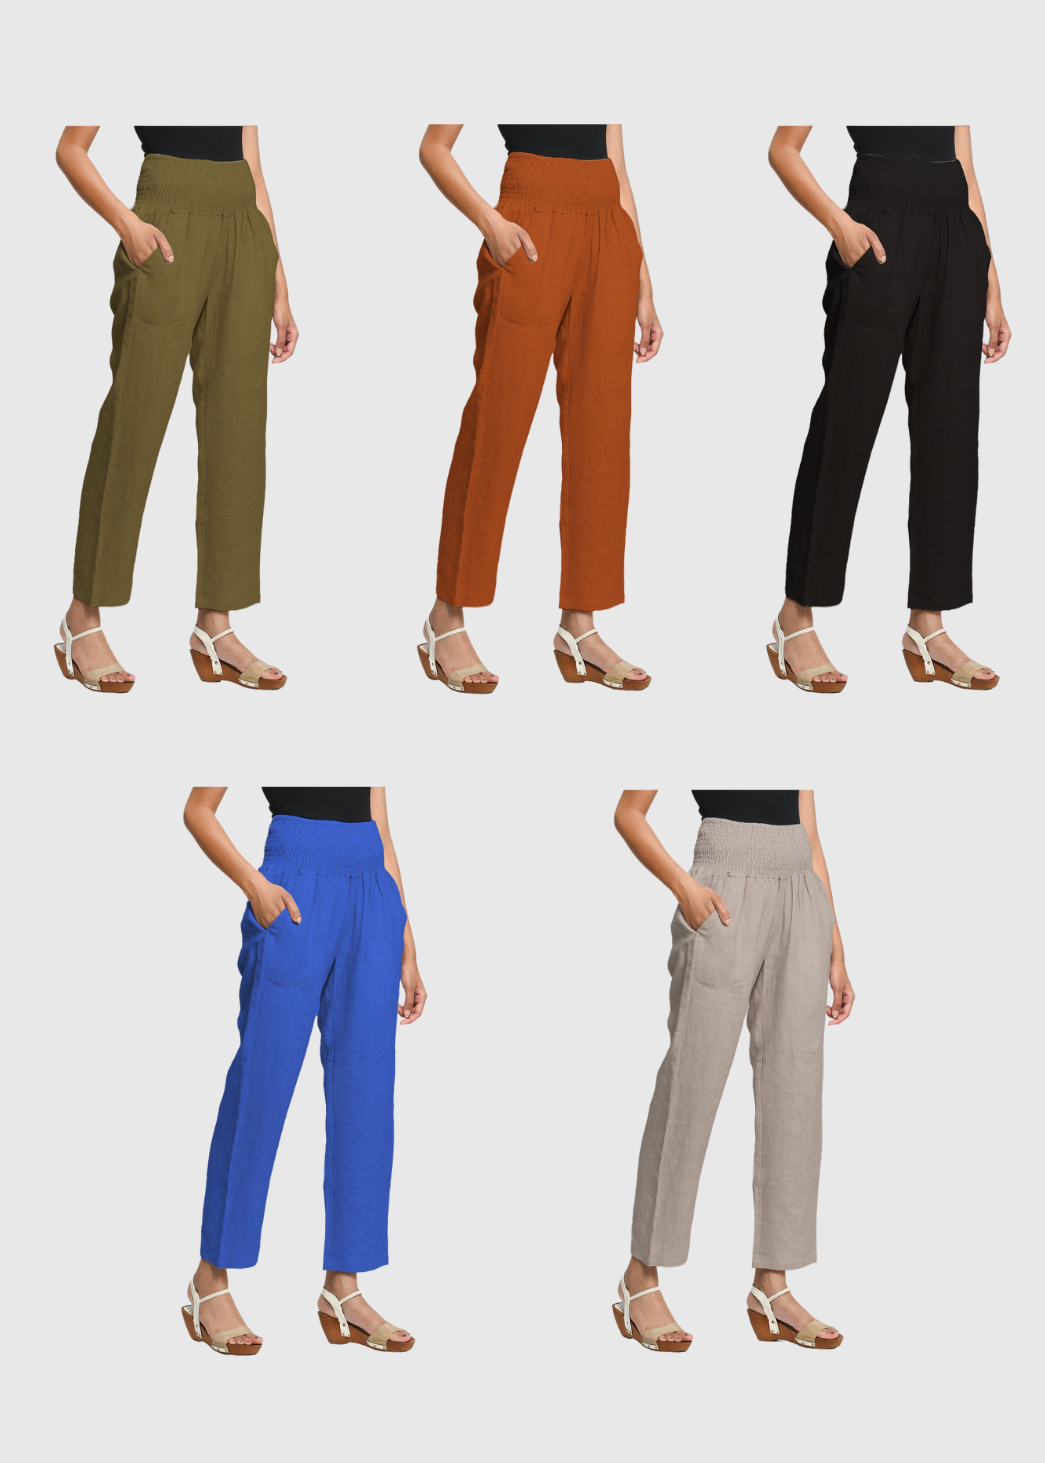 Linen Transitional Pants 5 Color Bundle